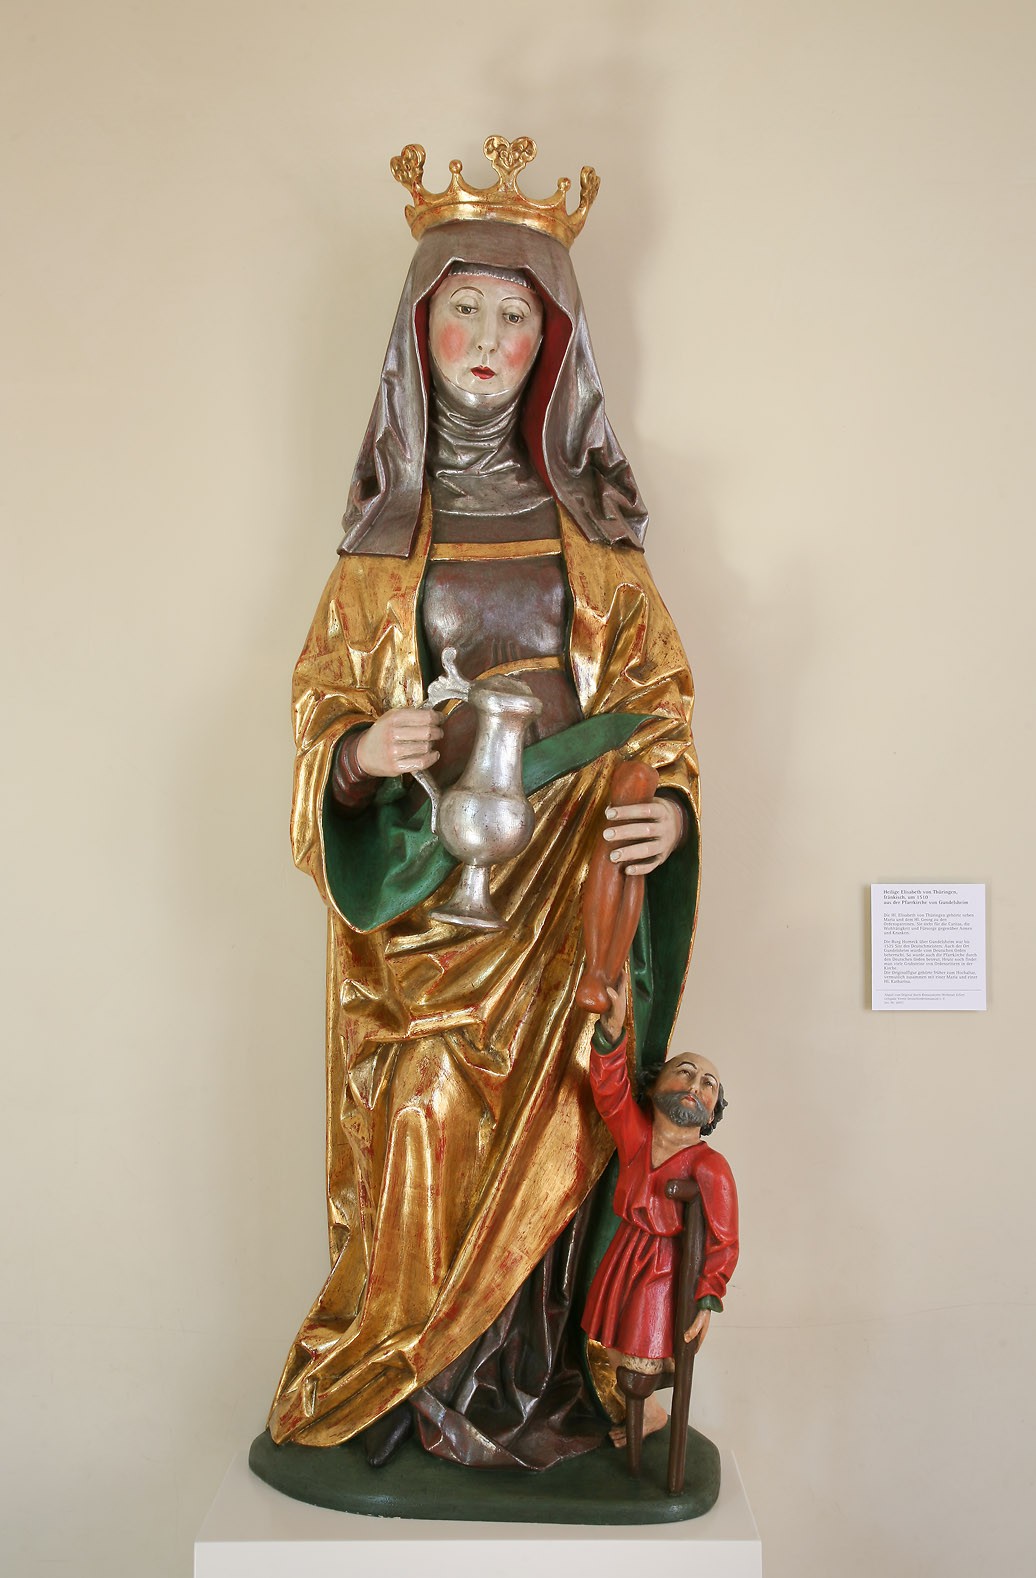 Das Bild zeigt eine Figur der Heiligen Elisabeth von Thüringen. Sie trägt ein Tuch auf dem Kopf, auf dem außerdem eine Krone sitzt, und hält einen Krug in der rechten Hand. An ihrer linken Seite befindet sich die Figur eines kleinen Mannes, der aufgrund eines fehlenden Beins auf Krücken gestützt ist.